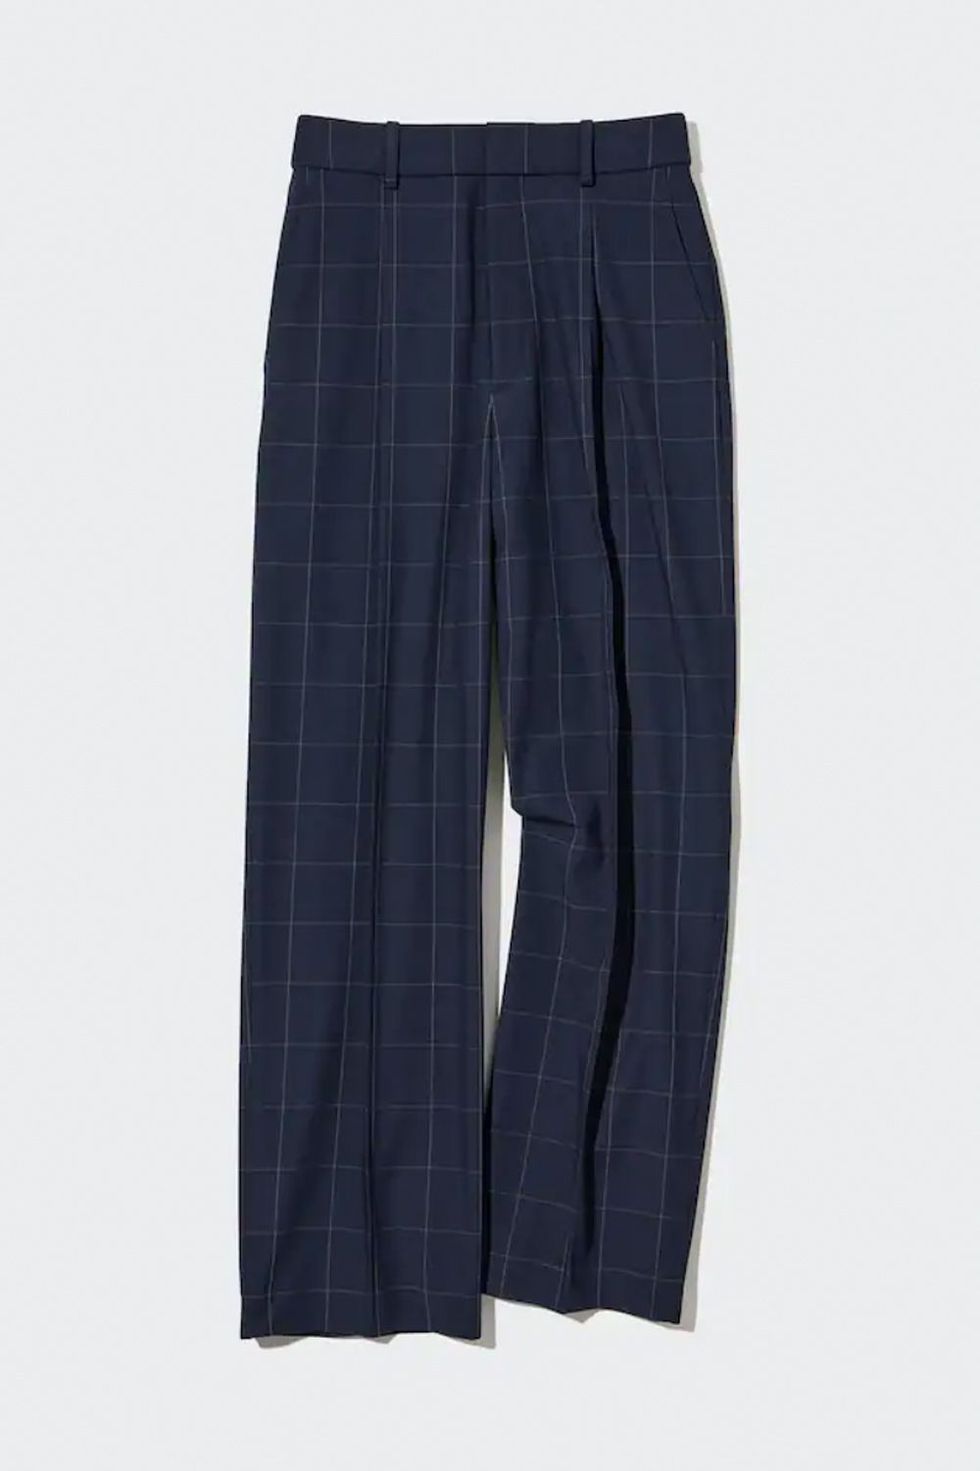 Pantalones azul marino con estampado de cuadros